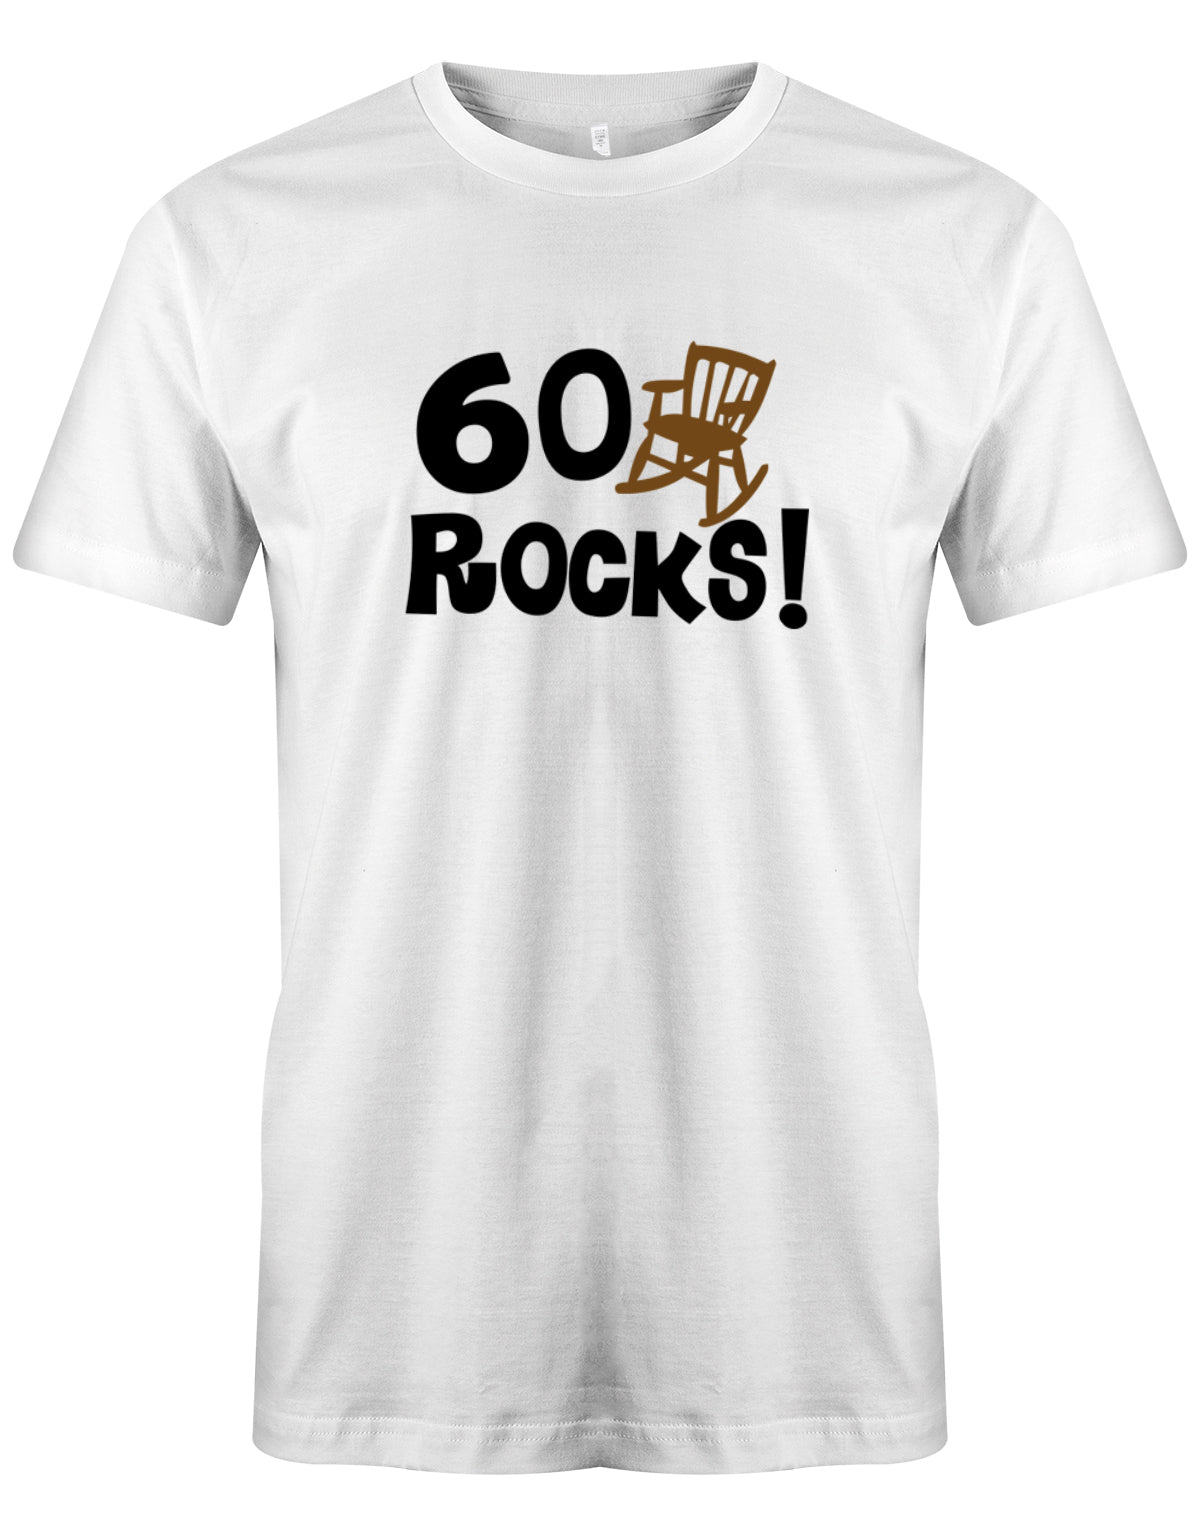 Lustiges T-Shirt zum 60. Geburtstag für den Mann Bedruckt mit 60 Rocks! Schaukelstuhl Weiss